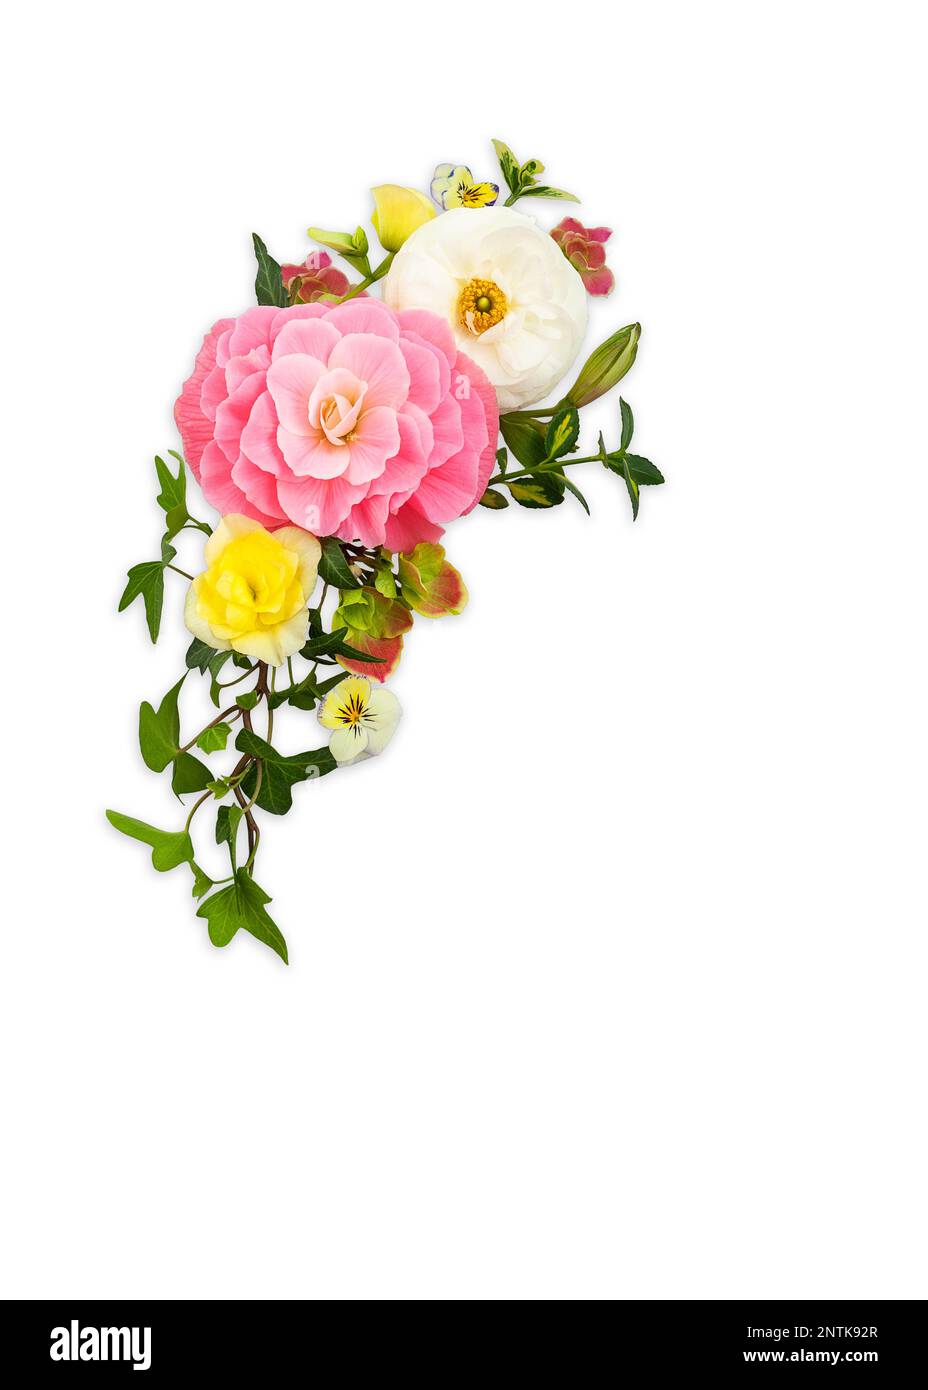 Arrangement de printemps de fleur sur fond blanc. Bouquet de roses, ranunculus, violettes et hortensia. Banque D'Images